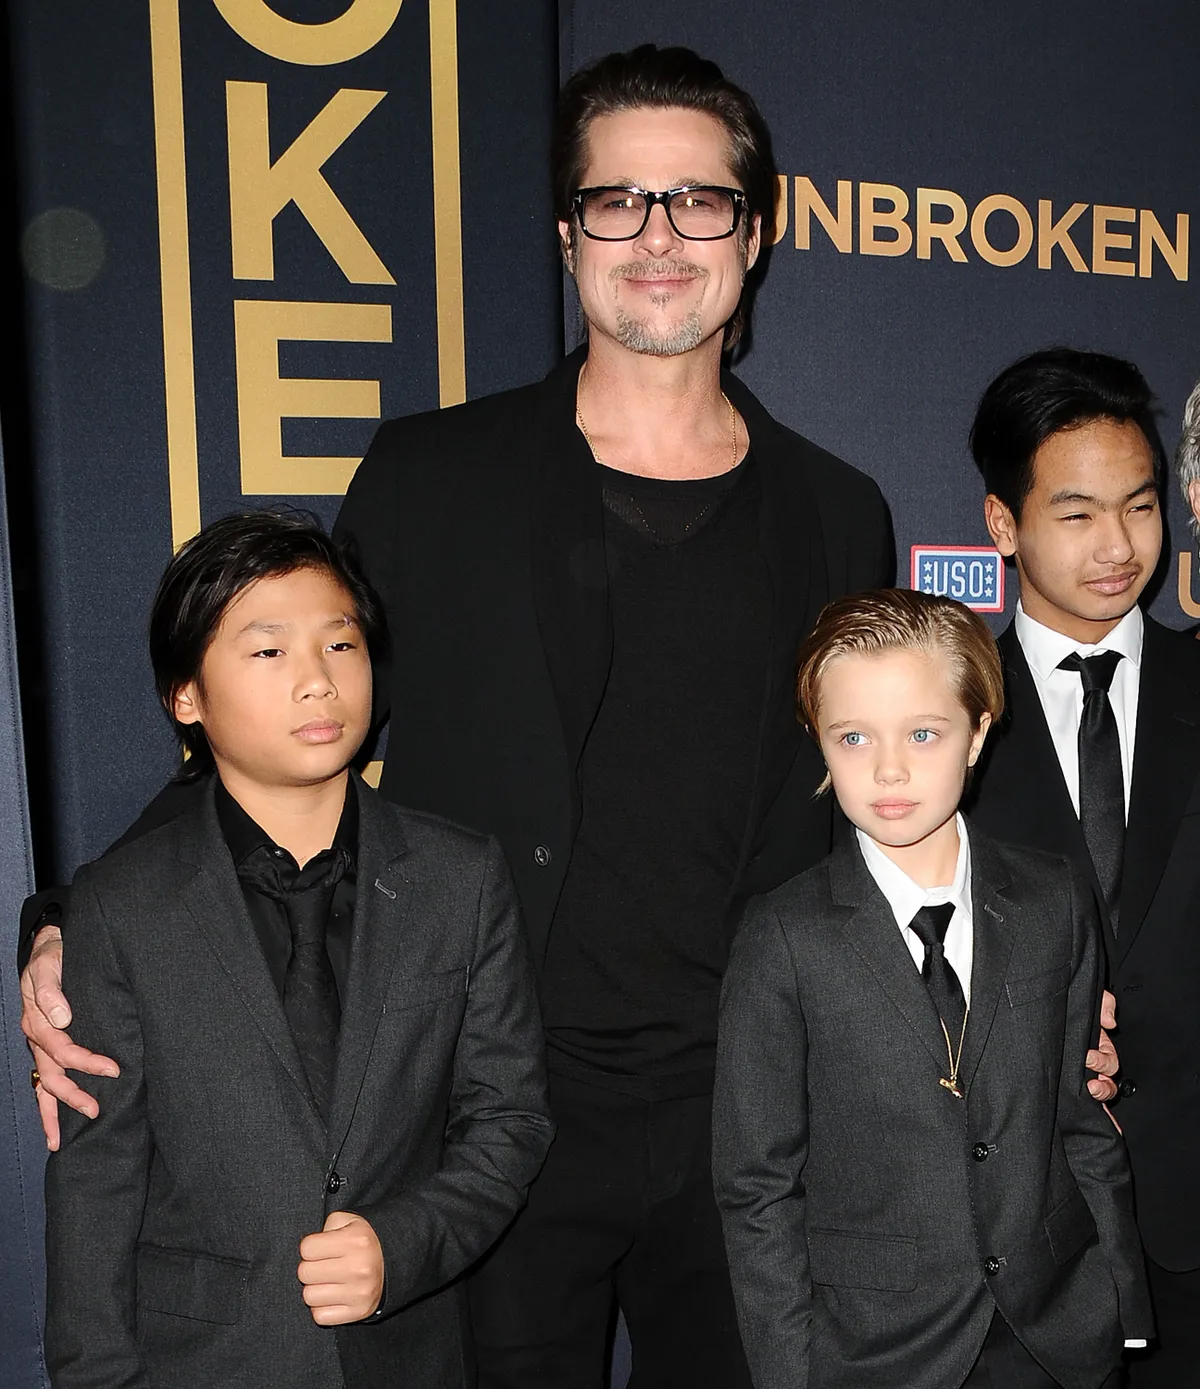 Pax Jolie-Pitt, Brad Pitt, Shiloh Jolie-Pitt and Maddox Jolie-Pitt at the premiere of "Unbroken," 2014 | Source: Getty Images